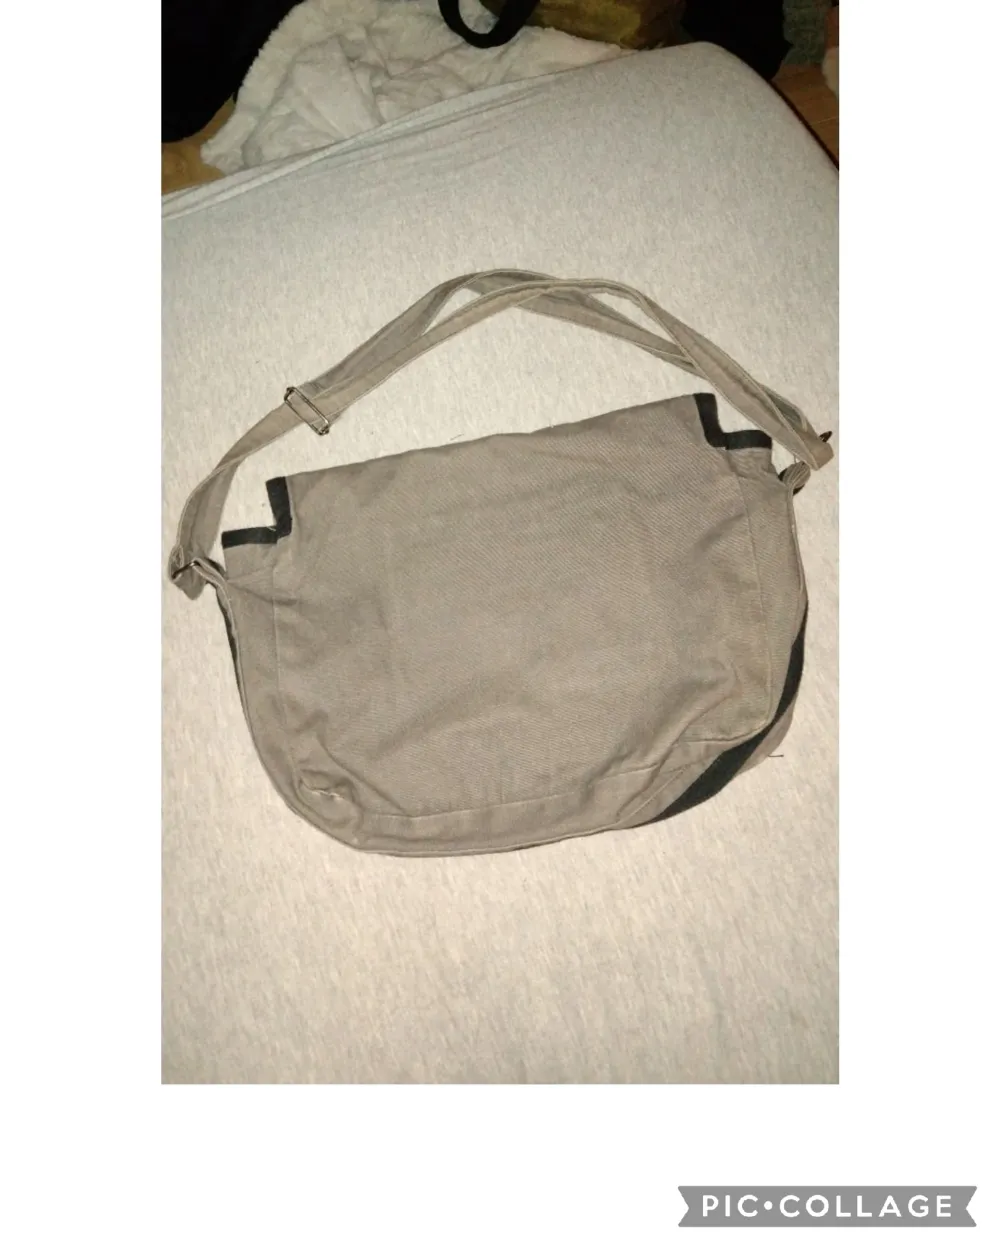 DKNY axel väska med justerbart band, köpt på seconhand och helt ok skick förutom att den har en liten synlig fläck (vet ej om det går att tar bort eller ej) har aldrig använt den. Först till kvarn!. Väskor.